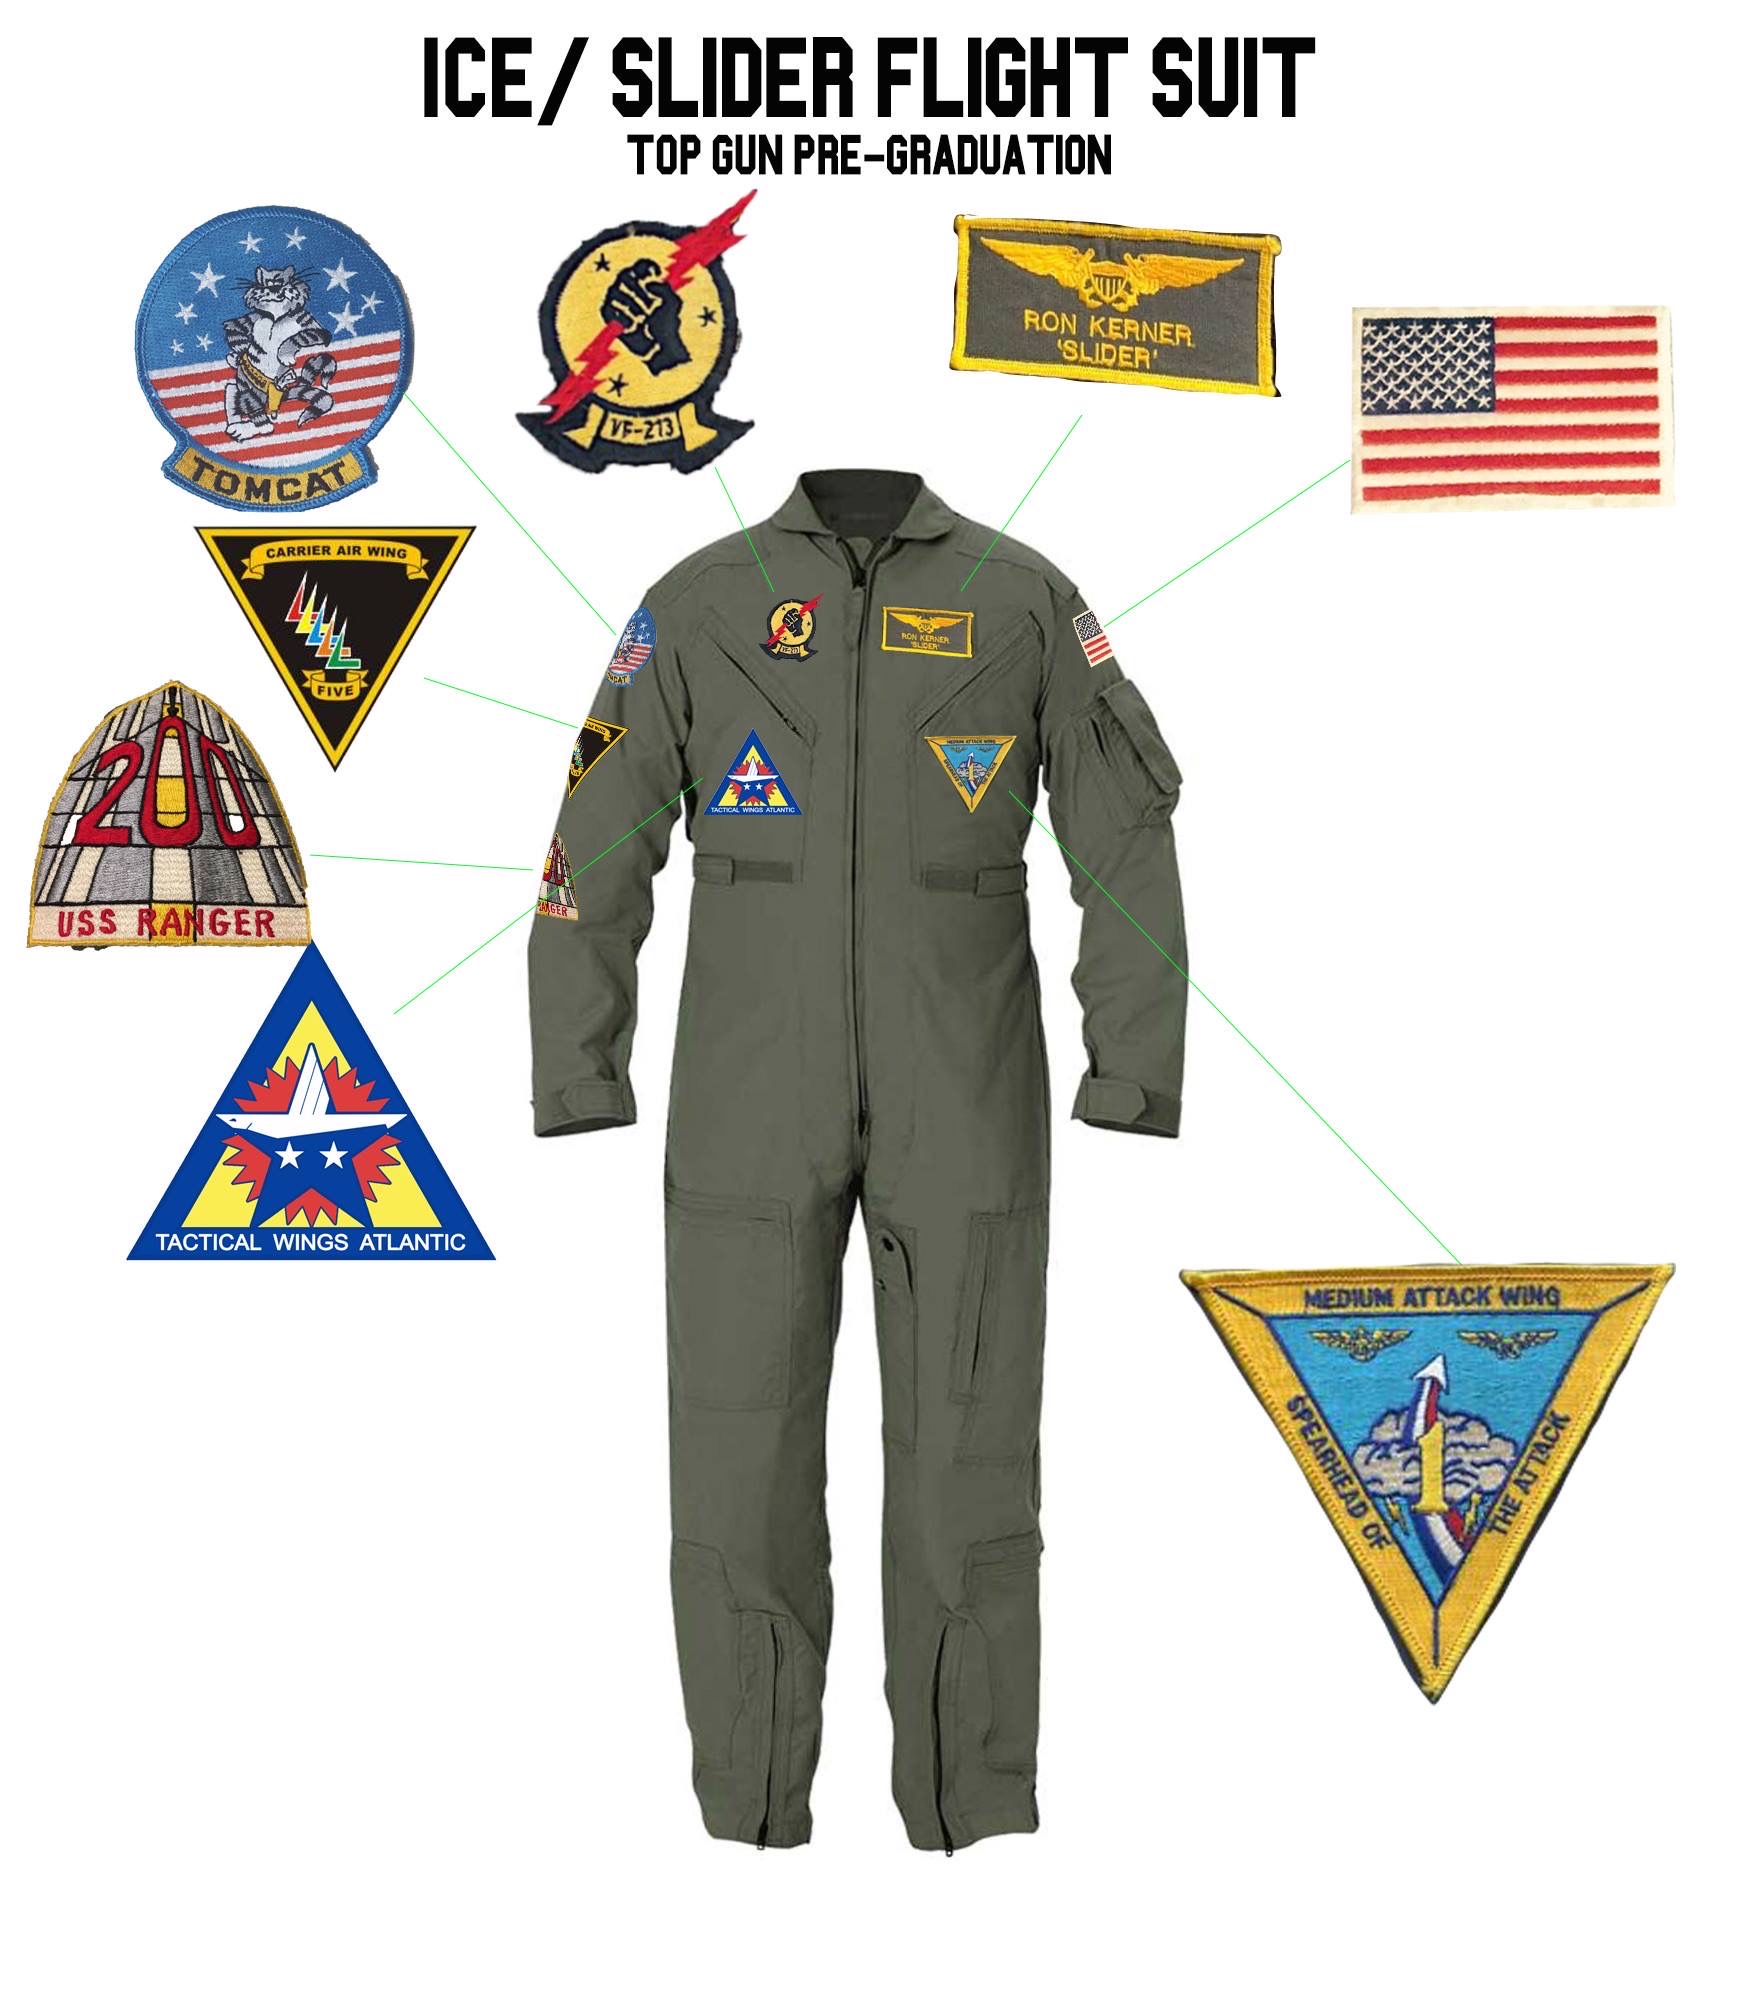 TOPGUN (1986): SLIDER's 'Post-Graduation' Flight Suit